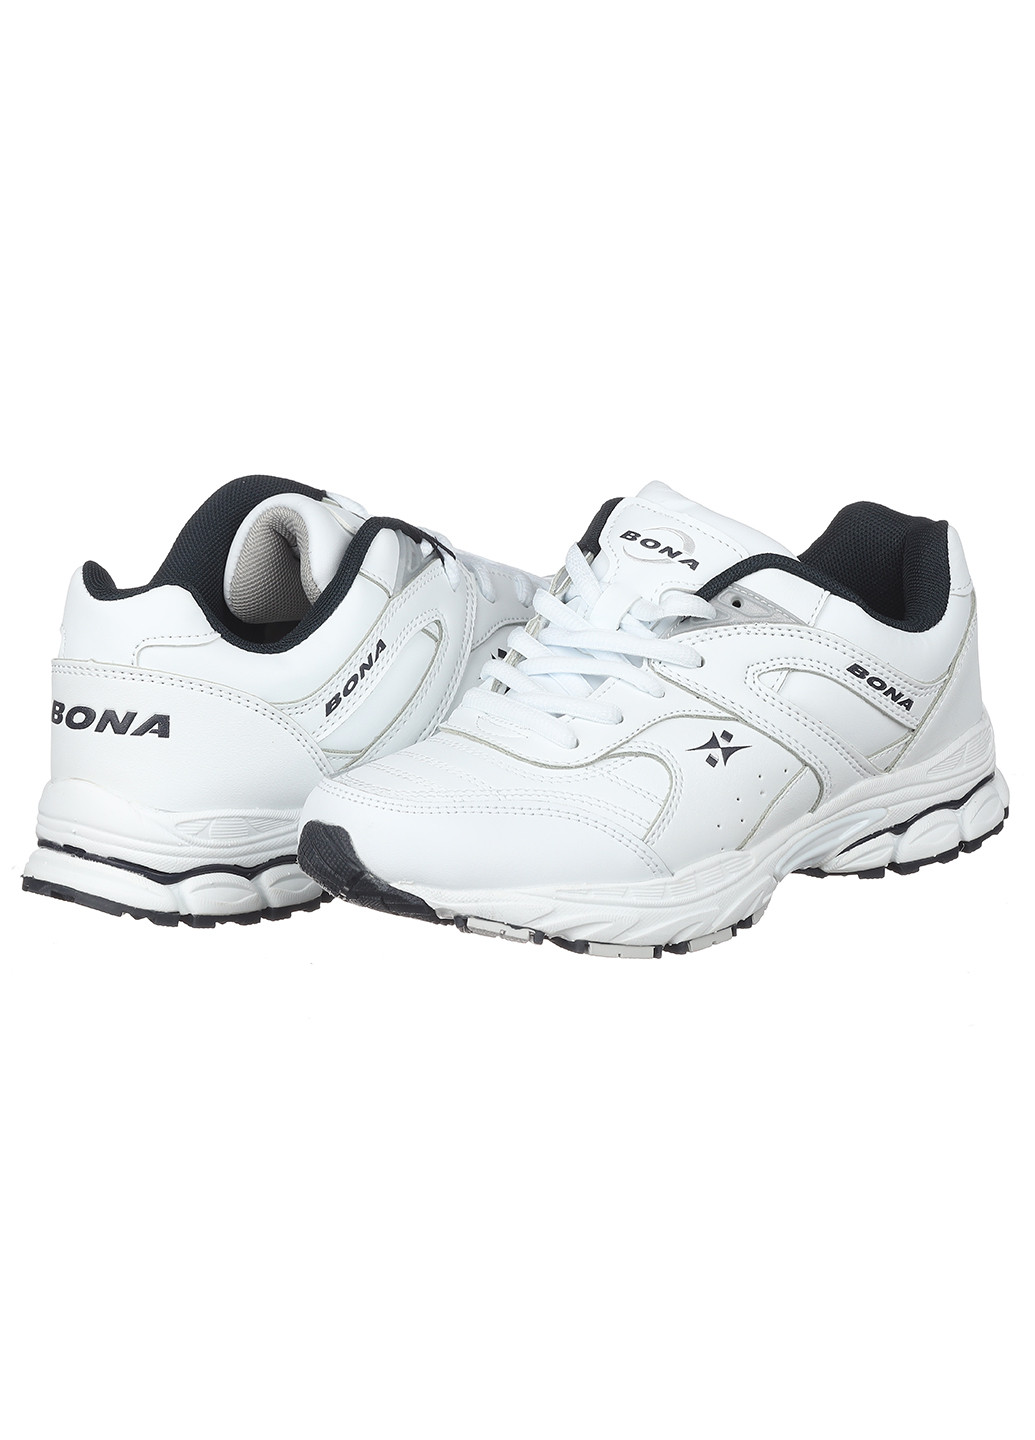 Білі осінні жіночі шкіряні кросівки 806a-2 Bona